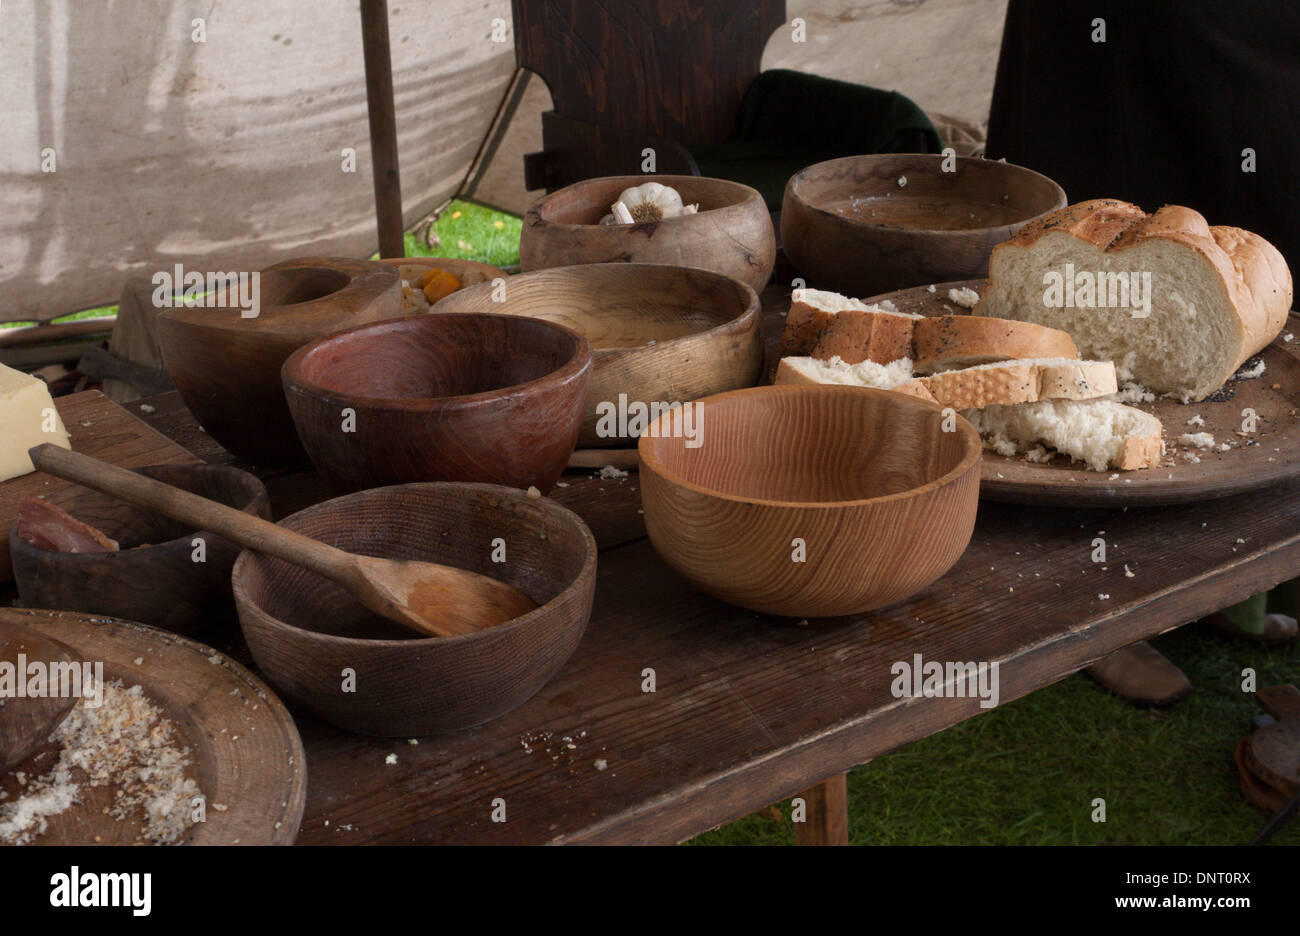 La nourriture et de la vaisselle et des couverts dans le style du 12ème - 13ème siècle, prises lors d'un festival de l'histoire. Banque D'Images